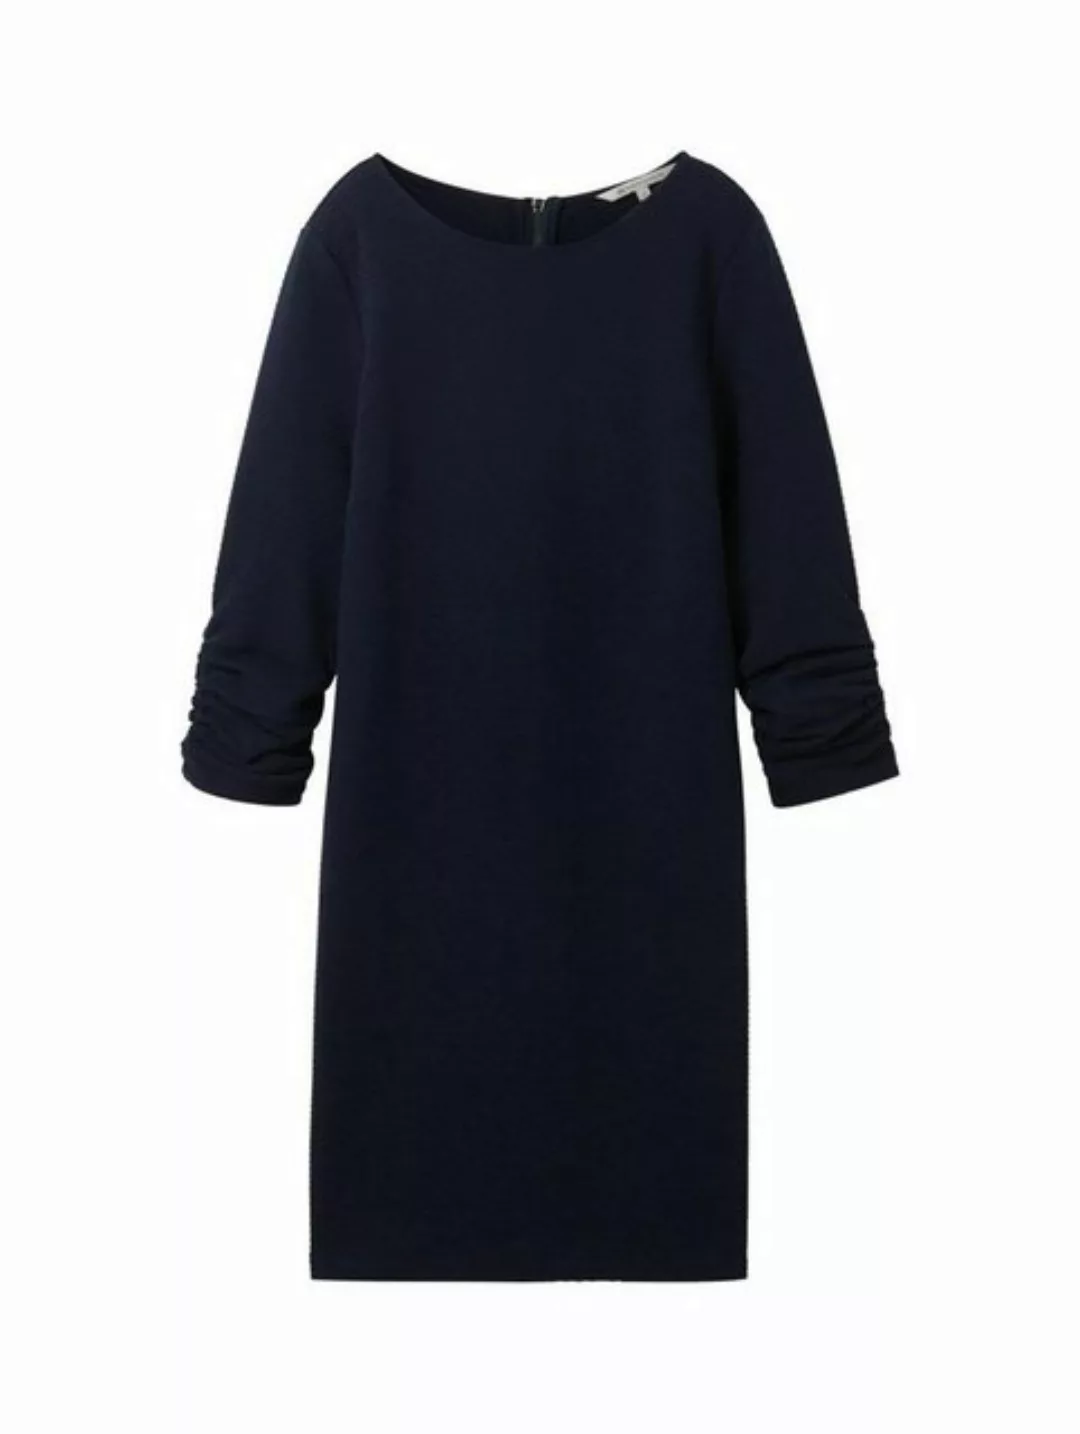 TOM TAILOR Denim Sommerkleid dress with sleeve detail günstig online kaufen